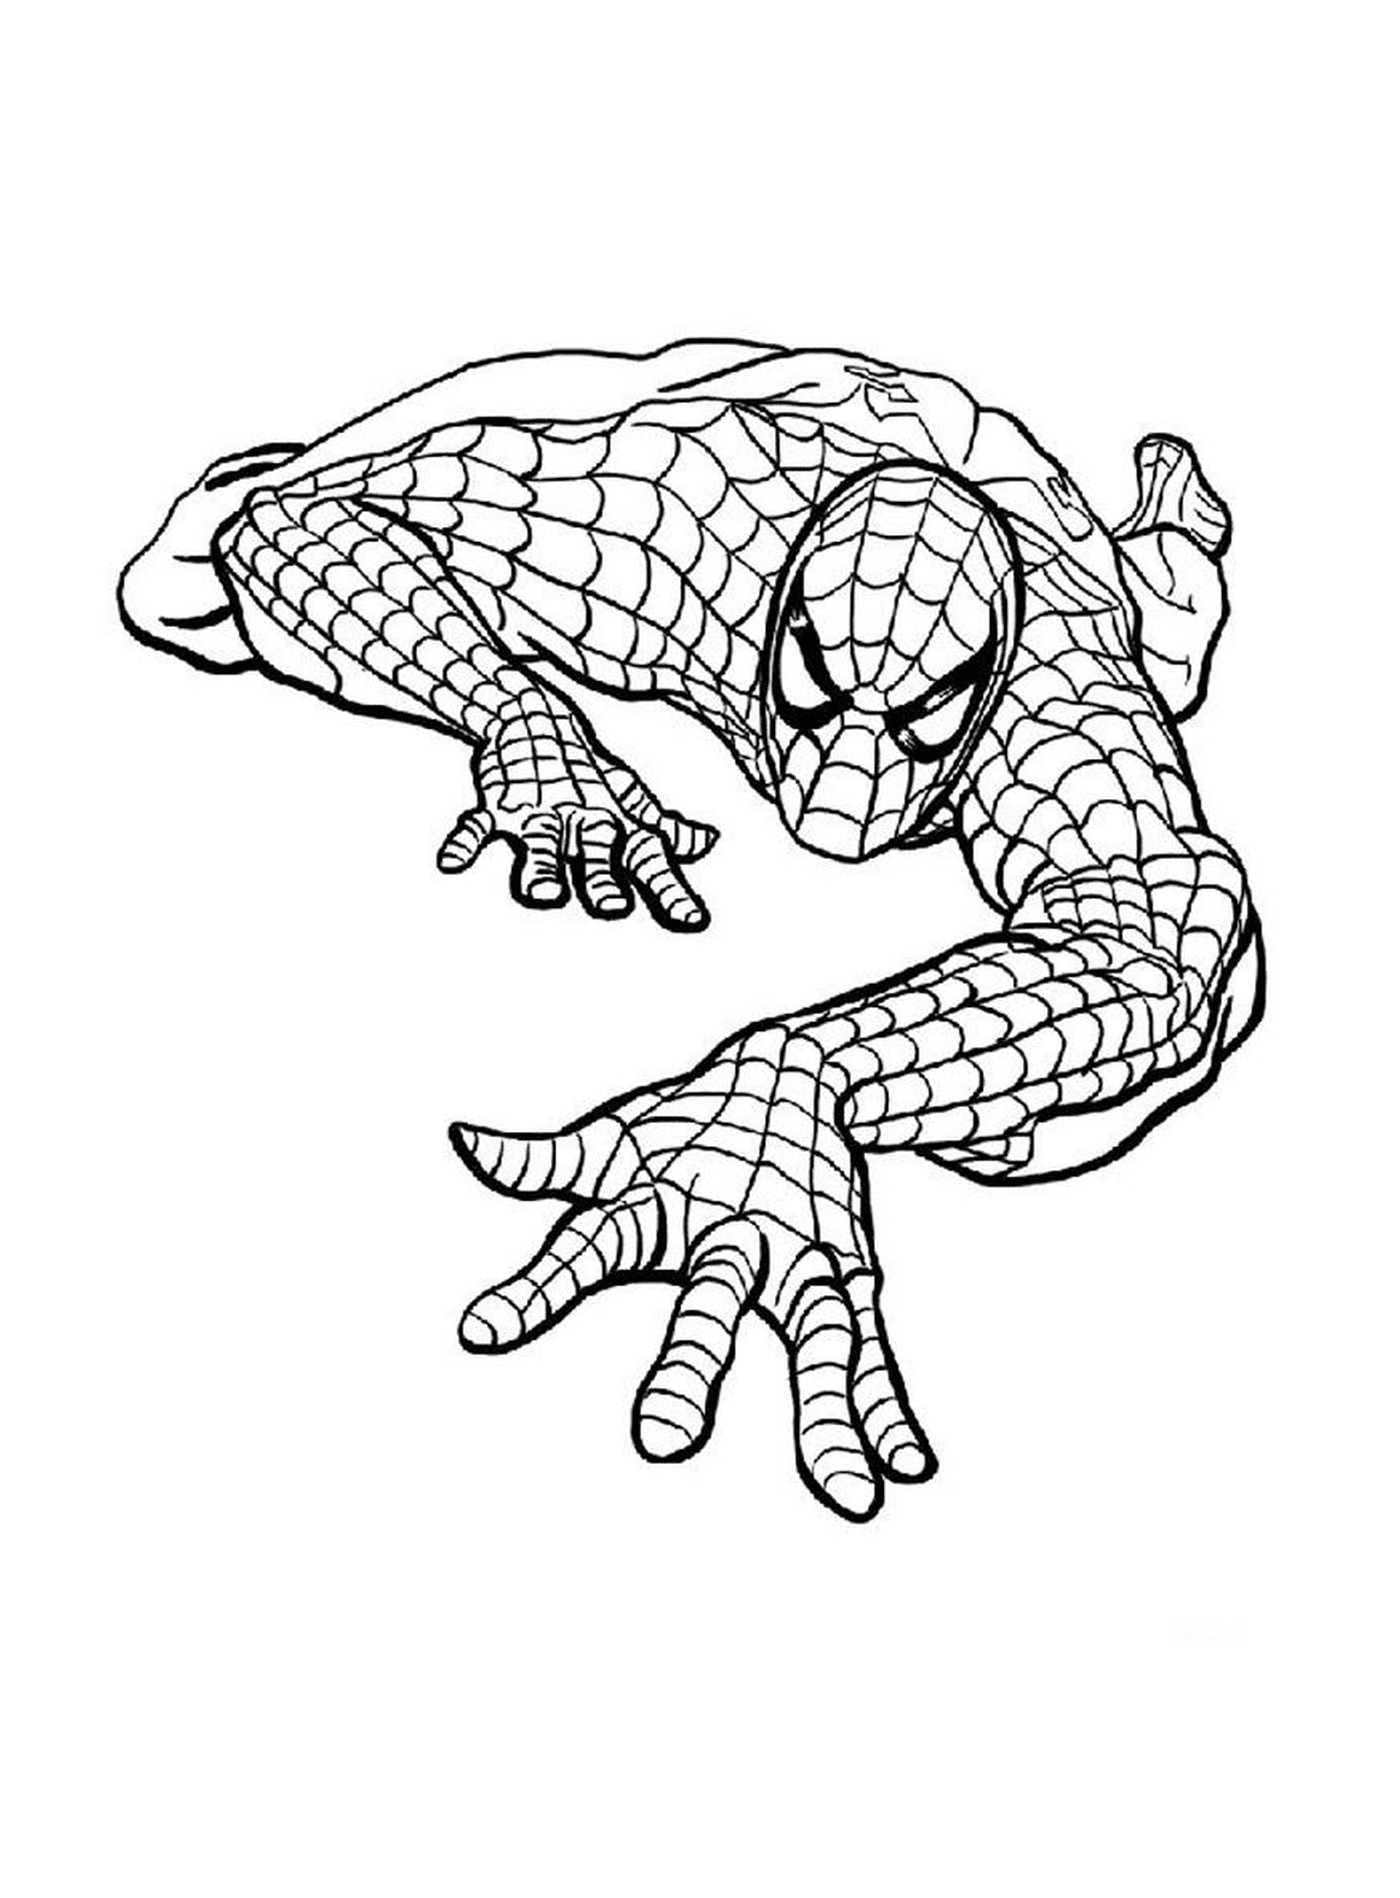  Homem-Aranha representado no desenho 